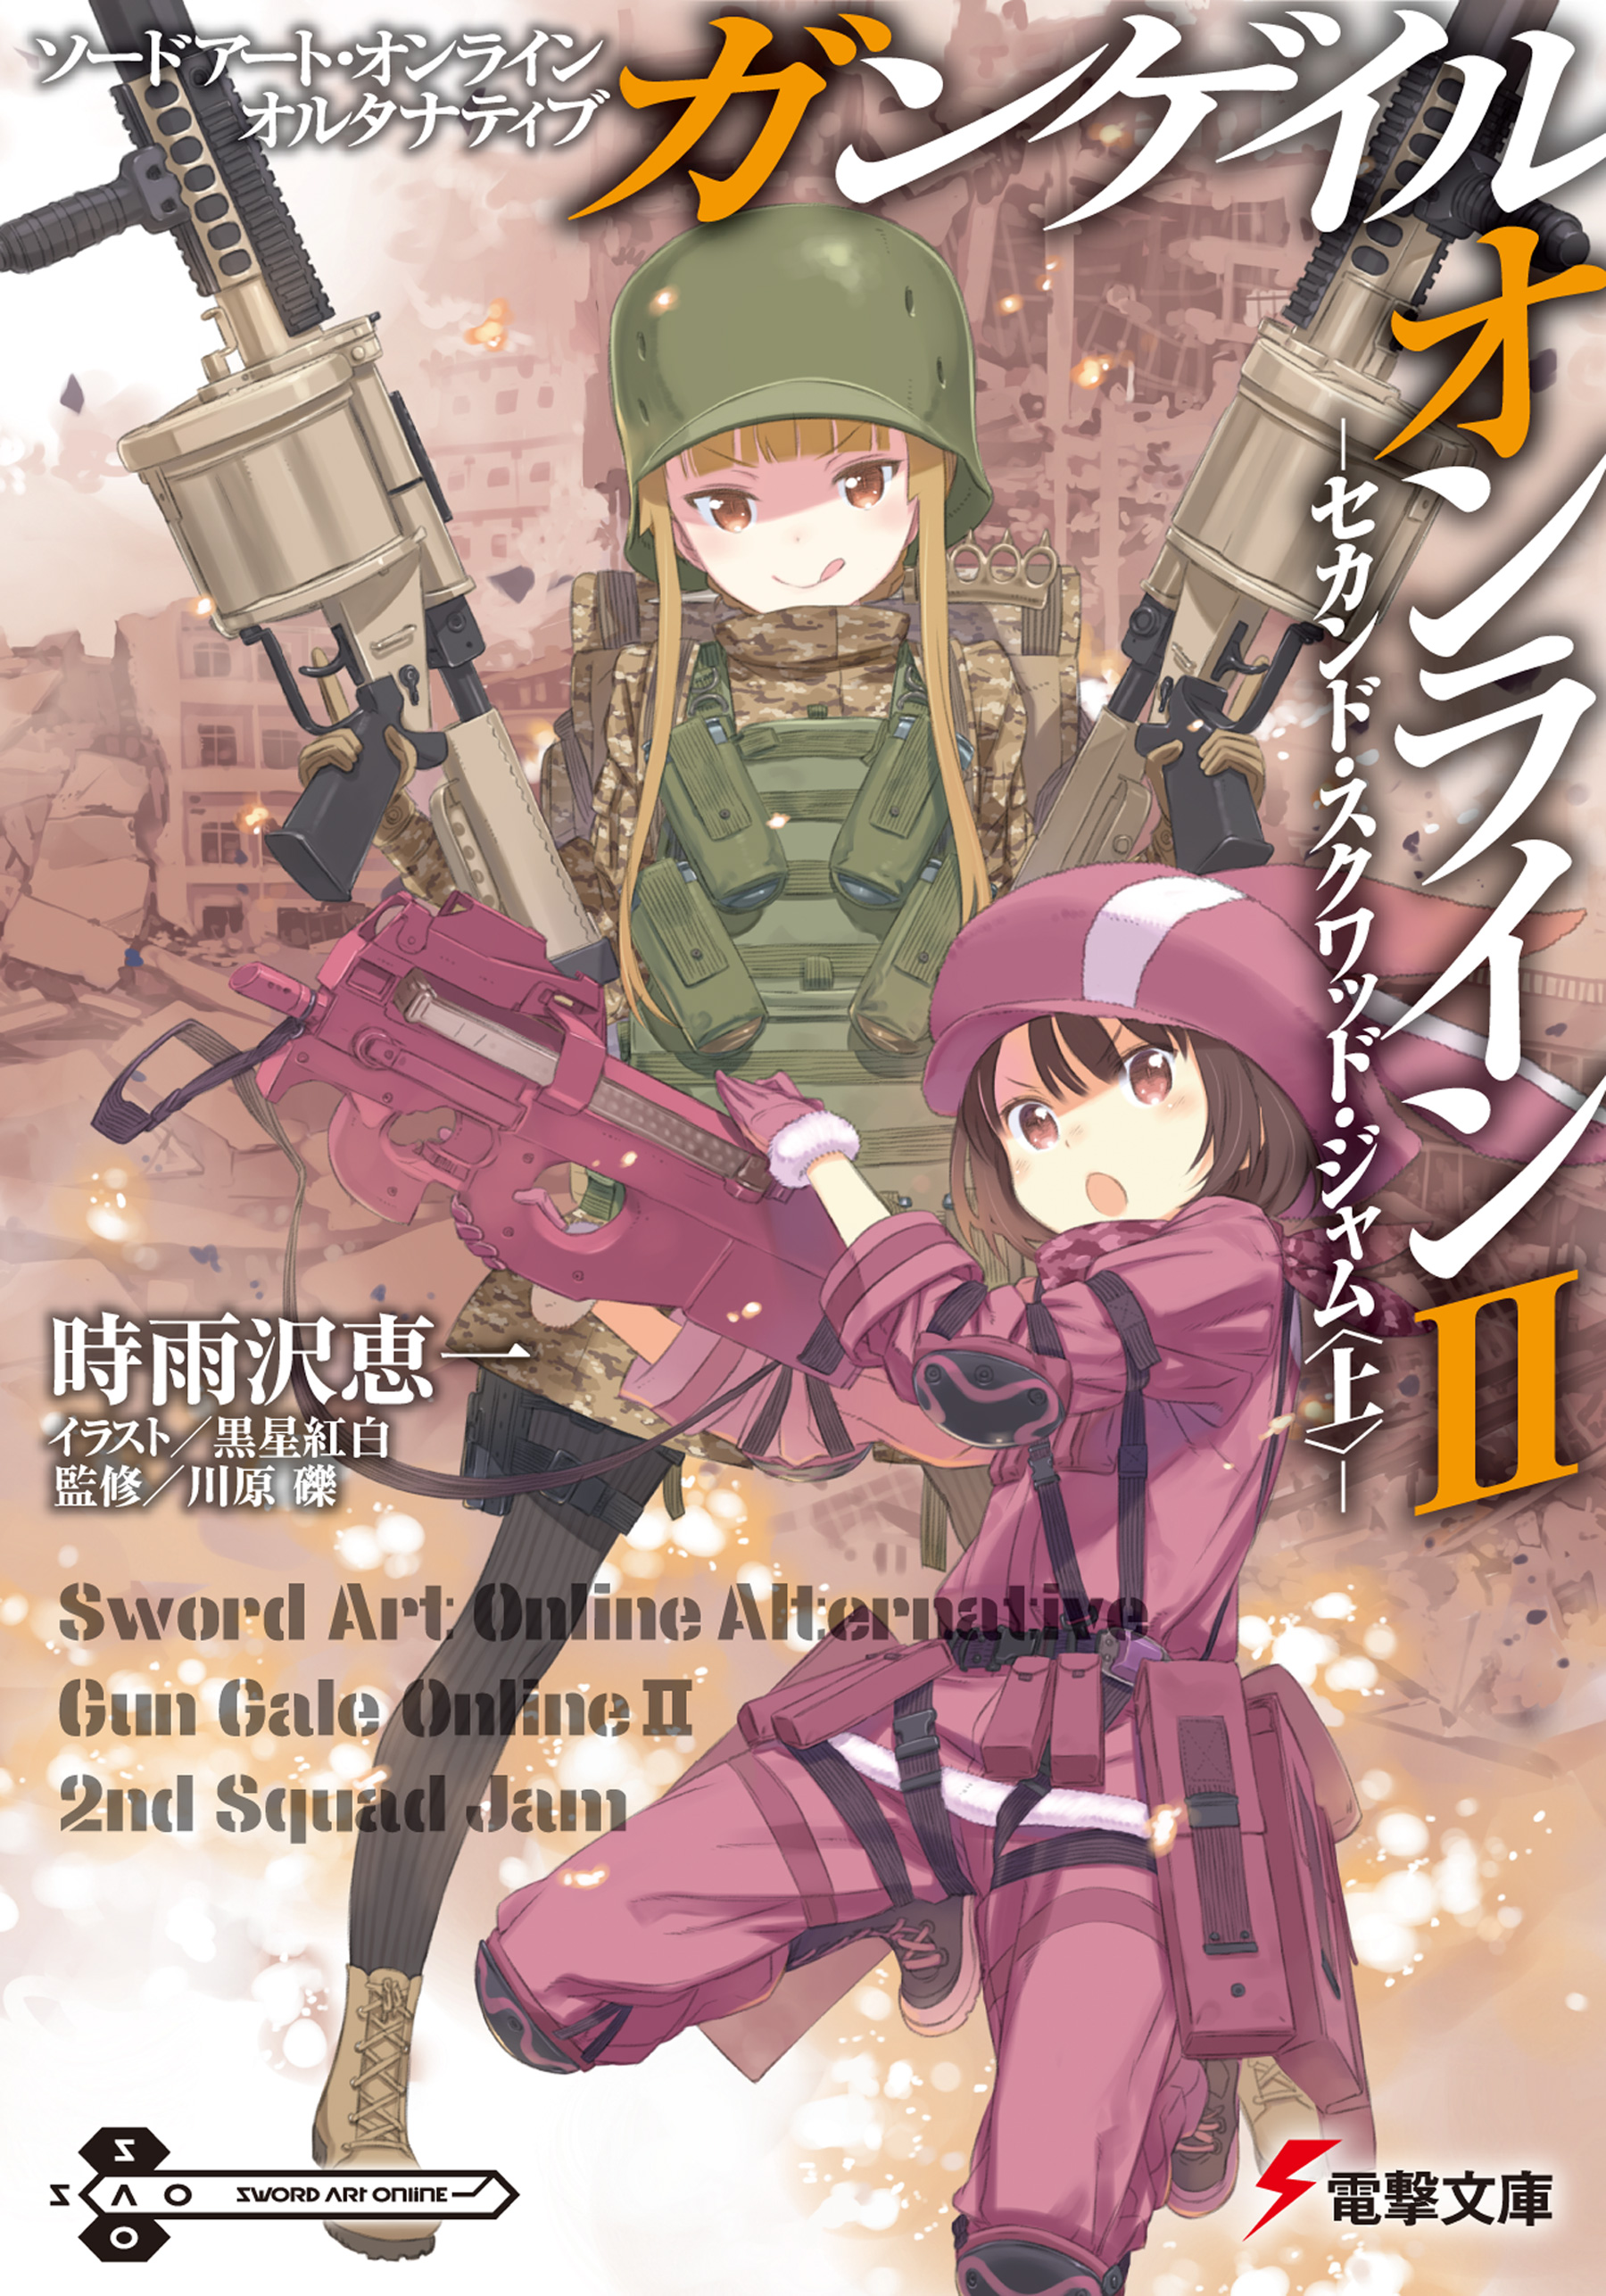 2 guns cover art